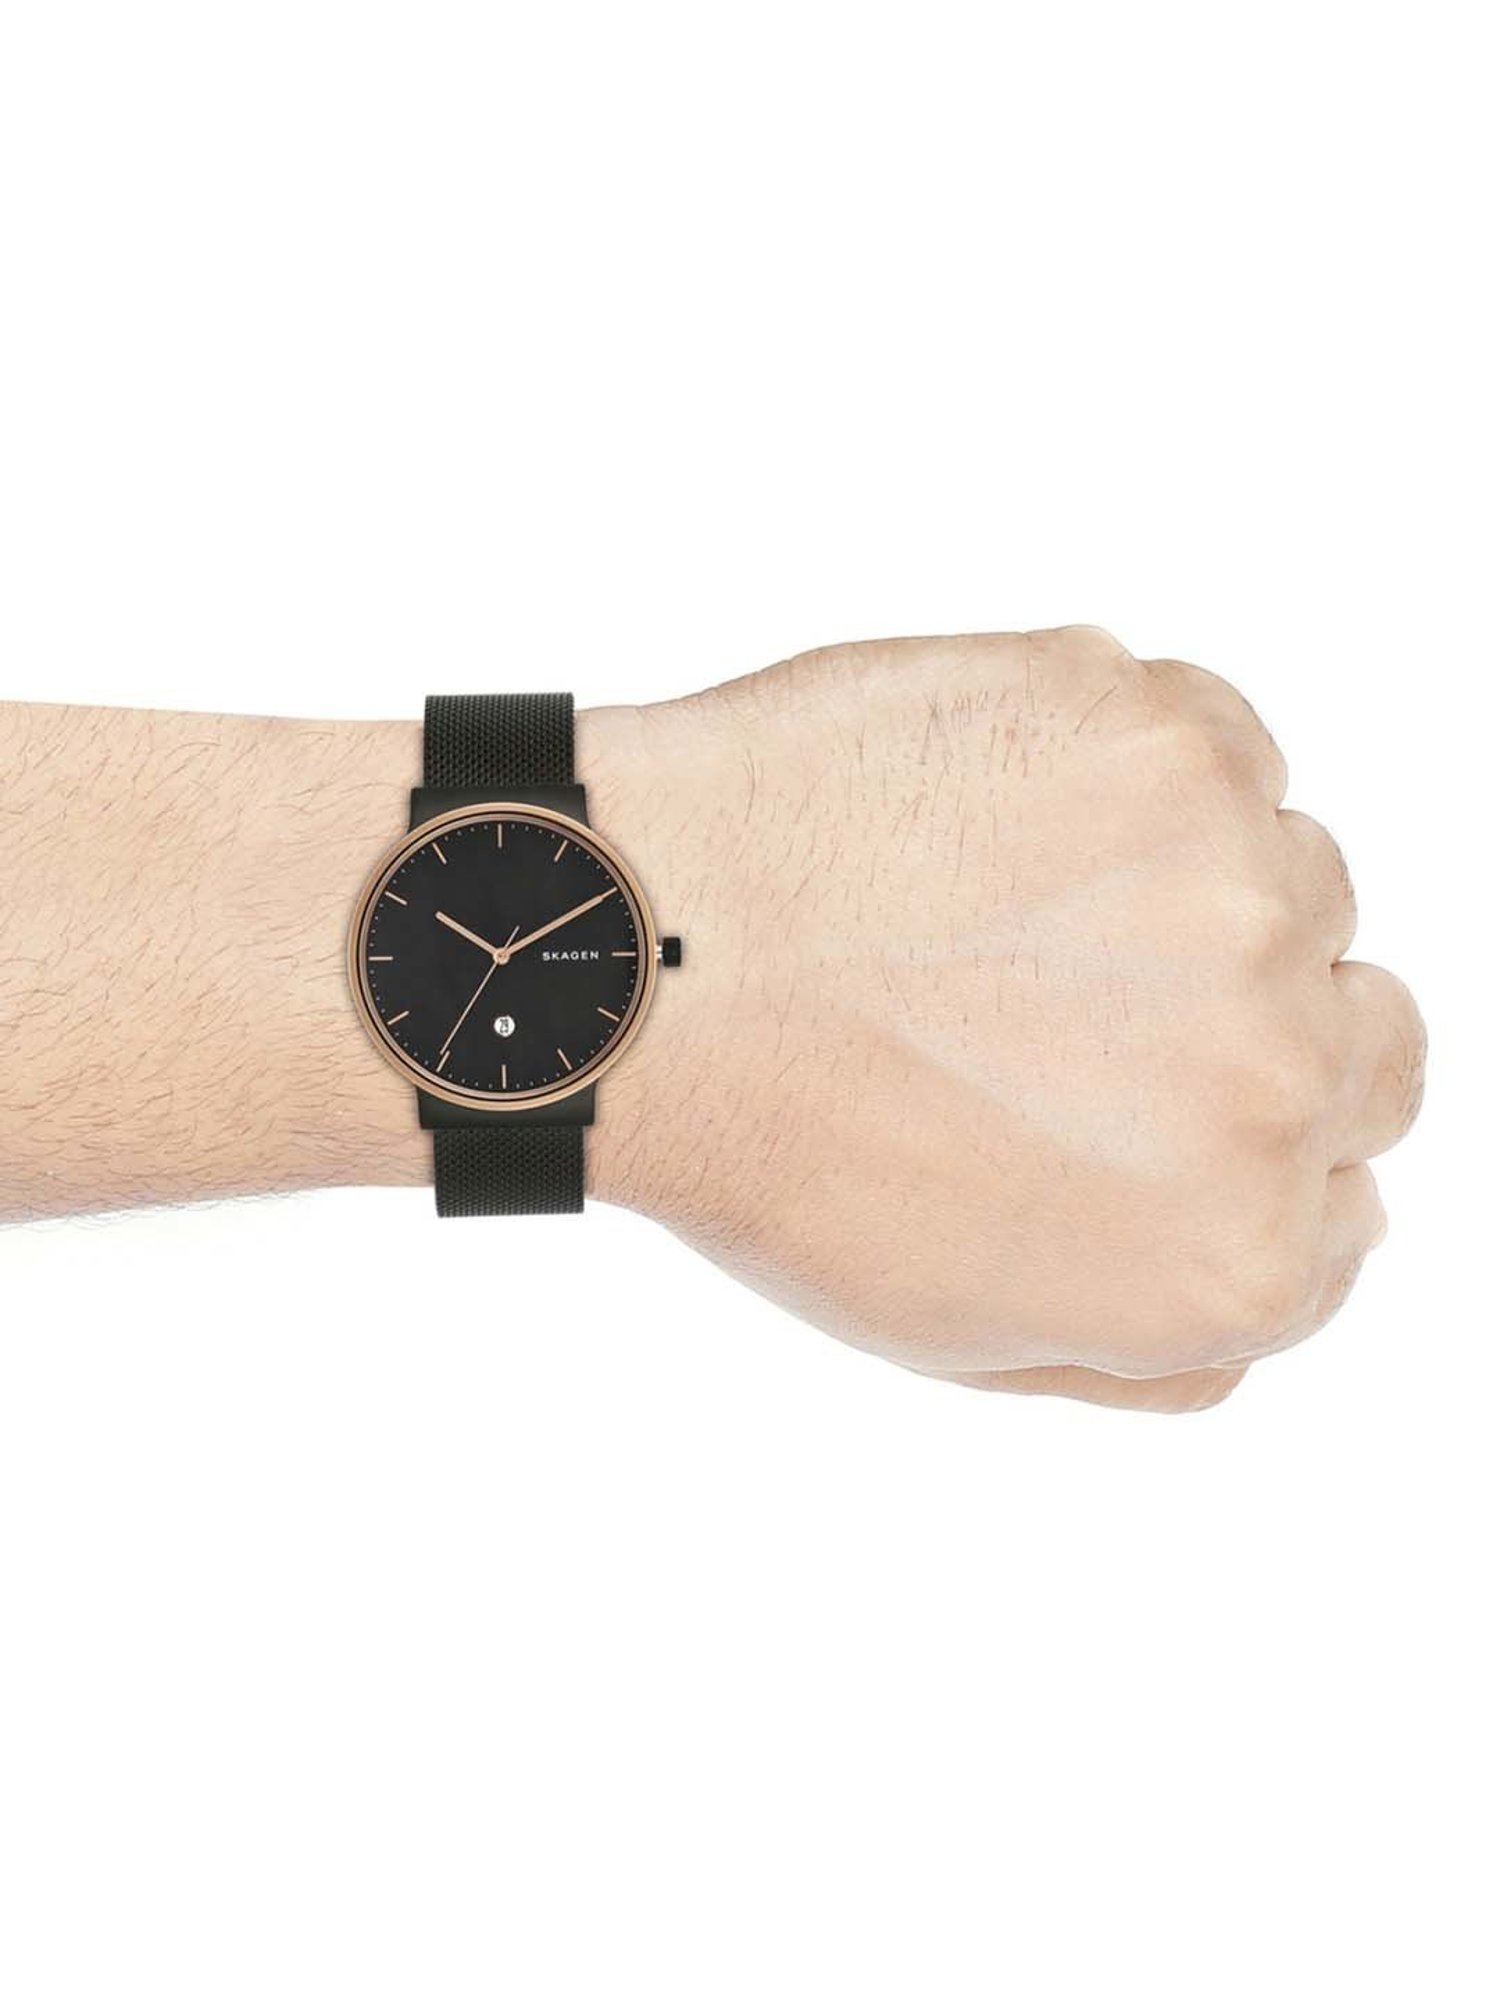 Skagen SKW6196 Men's Black Ancher Leather Strap Watch Stopwatch | eBay